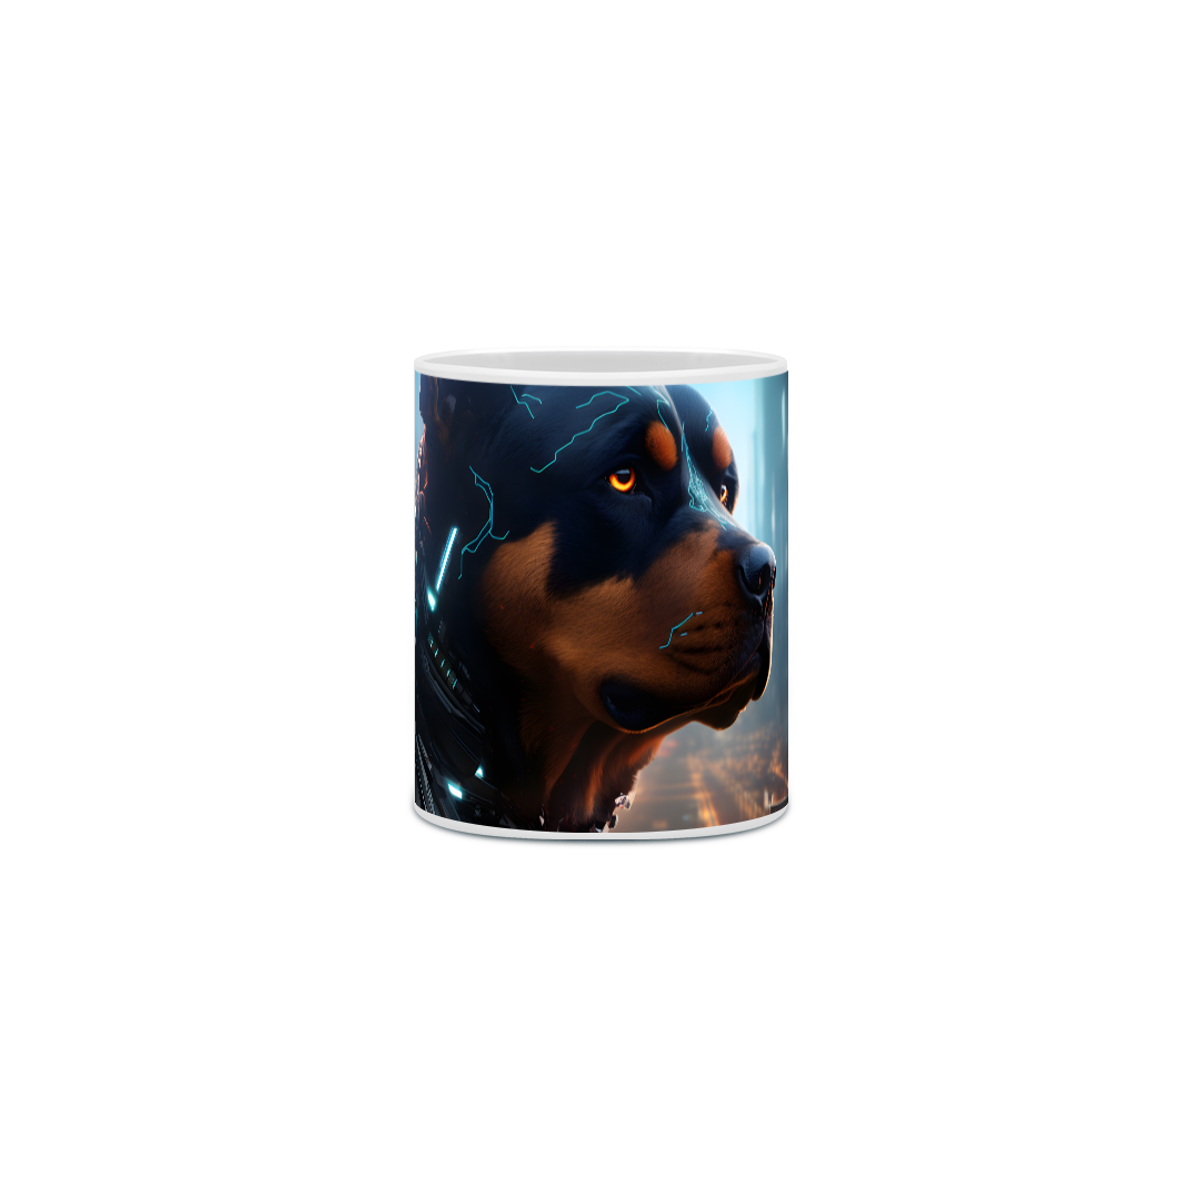 Nome do produto: Caneca Rottweiler com Arte Digital - #Autenticidade 0025